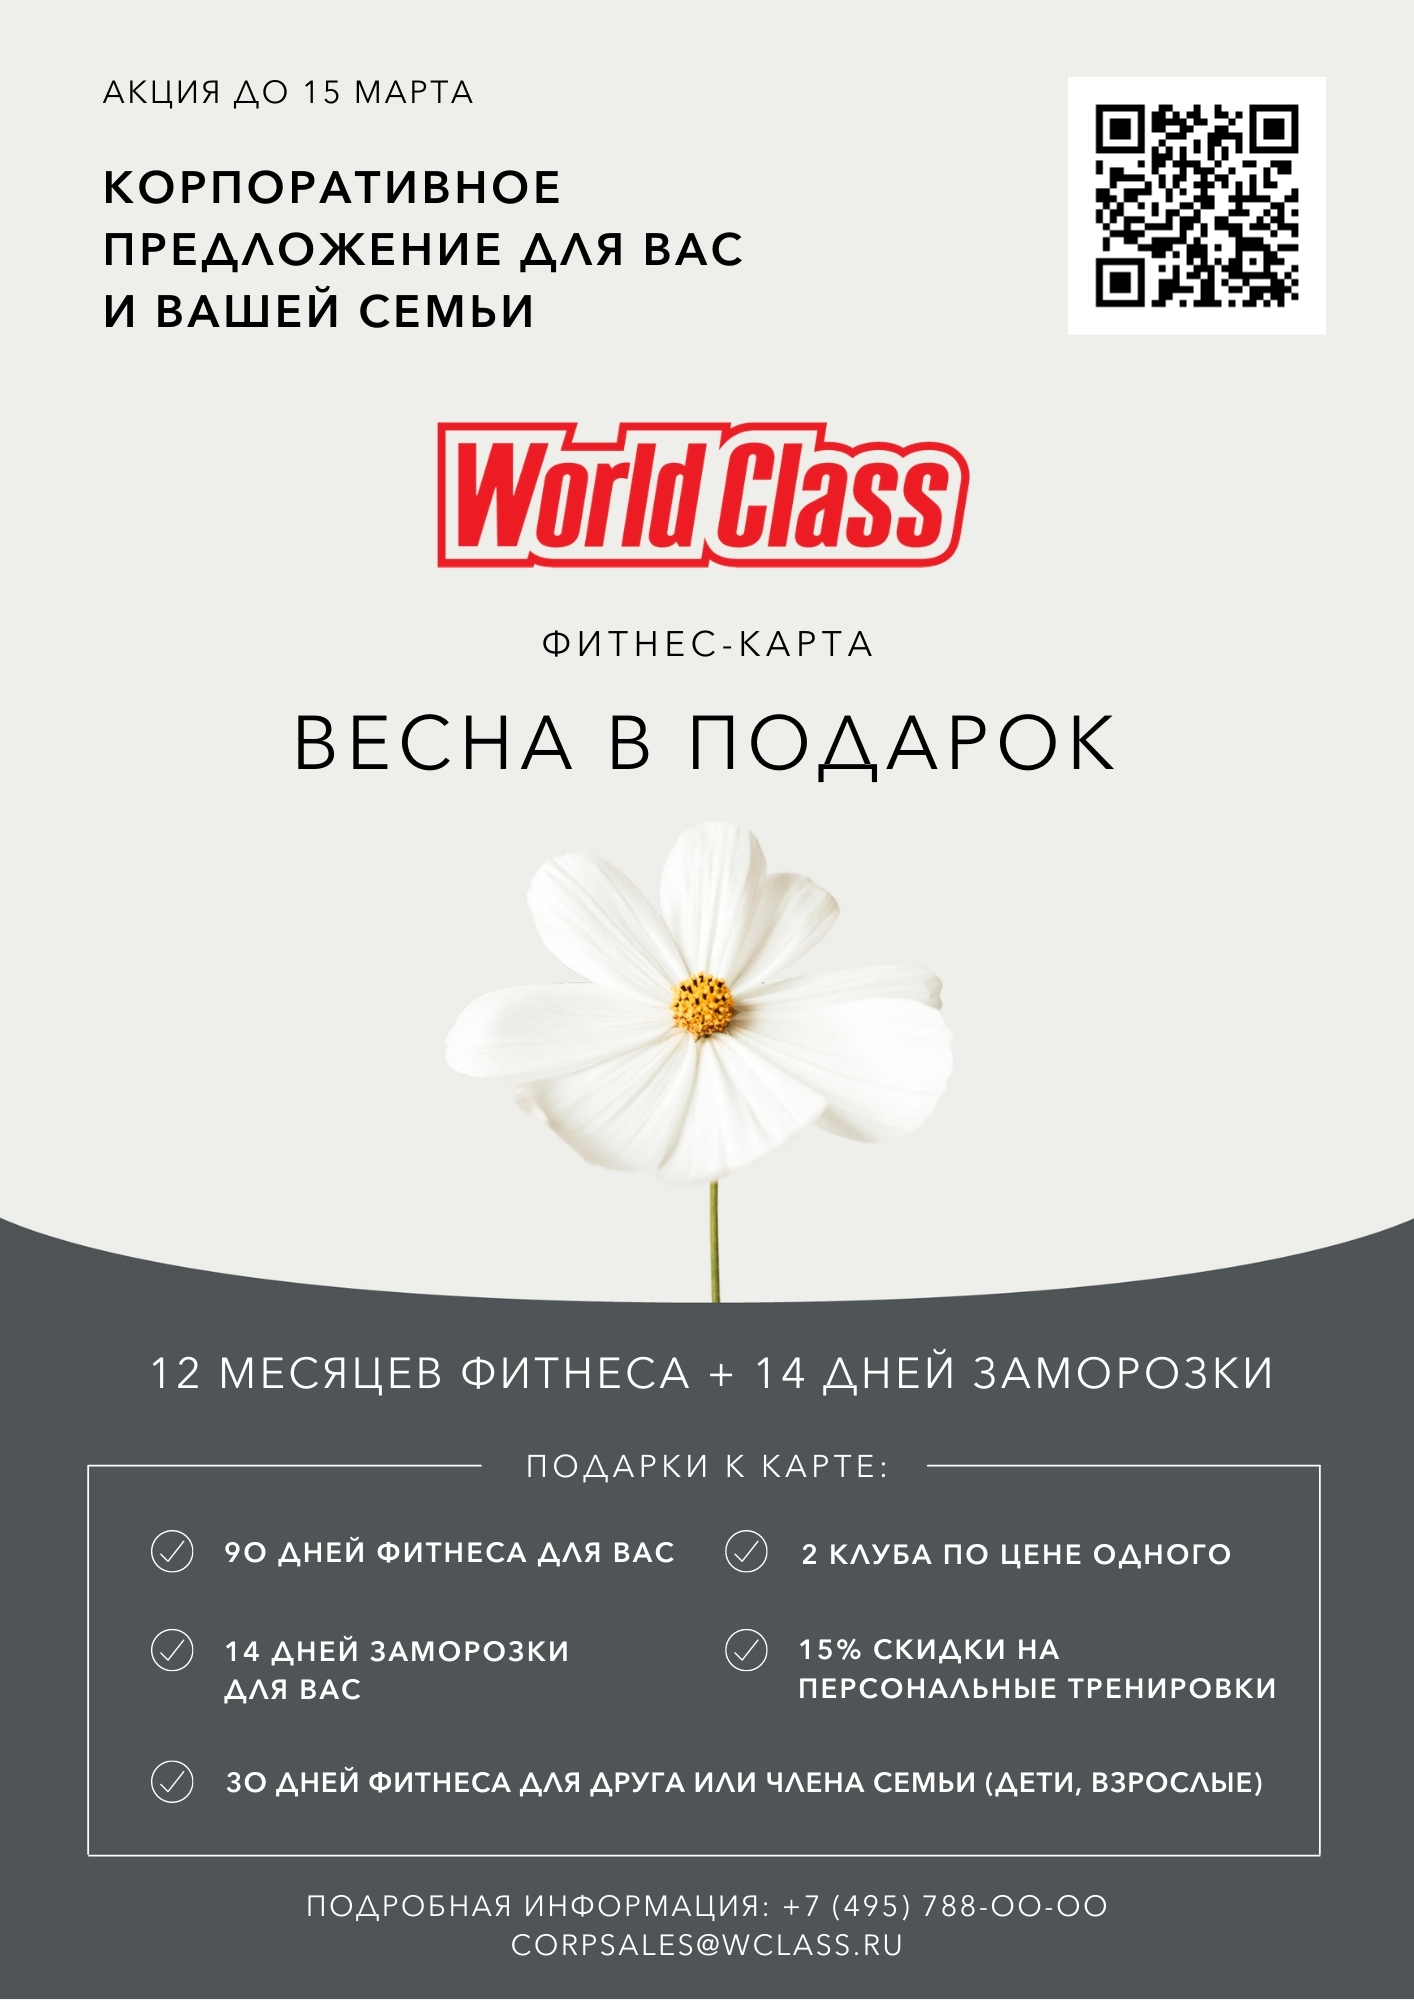 Весна в подарок от World class_рус_15.03.2021